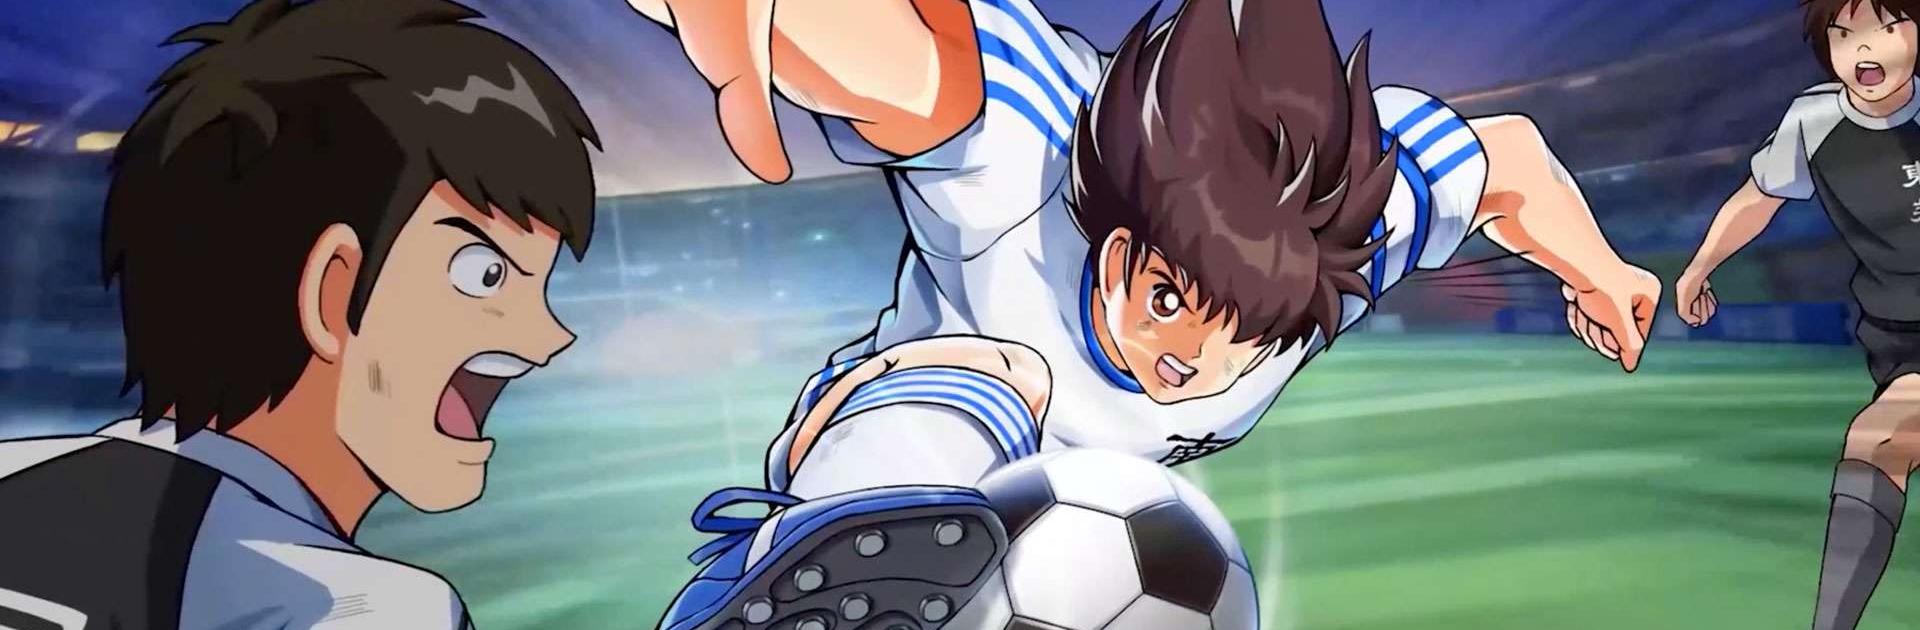 Captain Tsubasa: Dream Team - Aplicaciones en Google Play